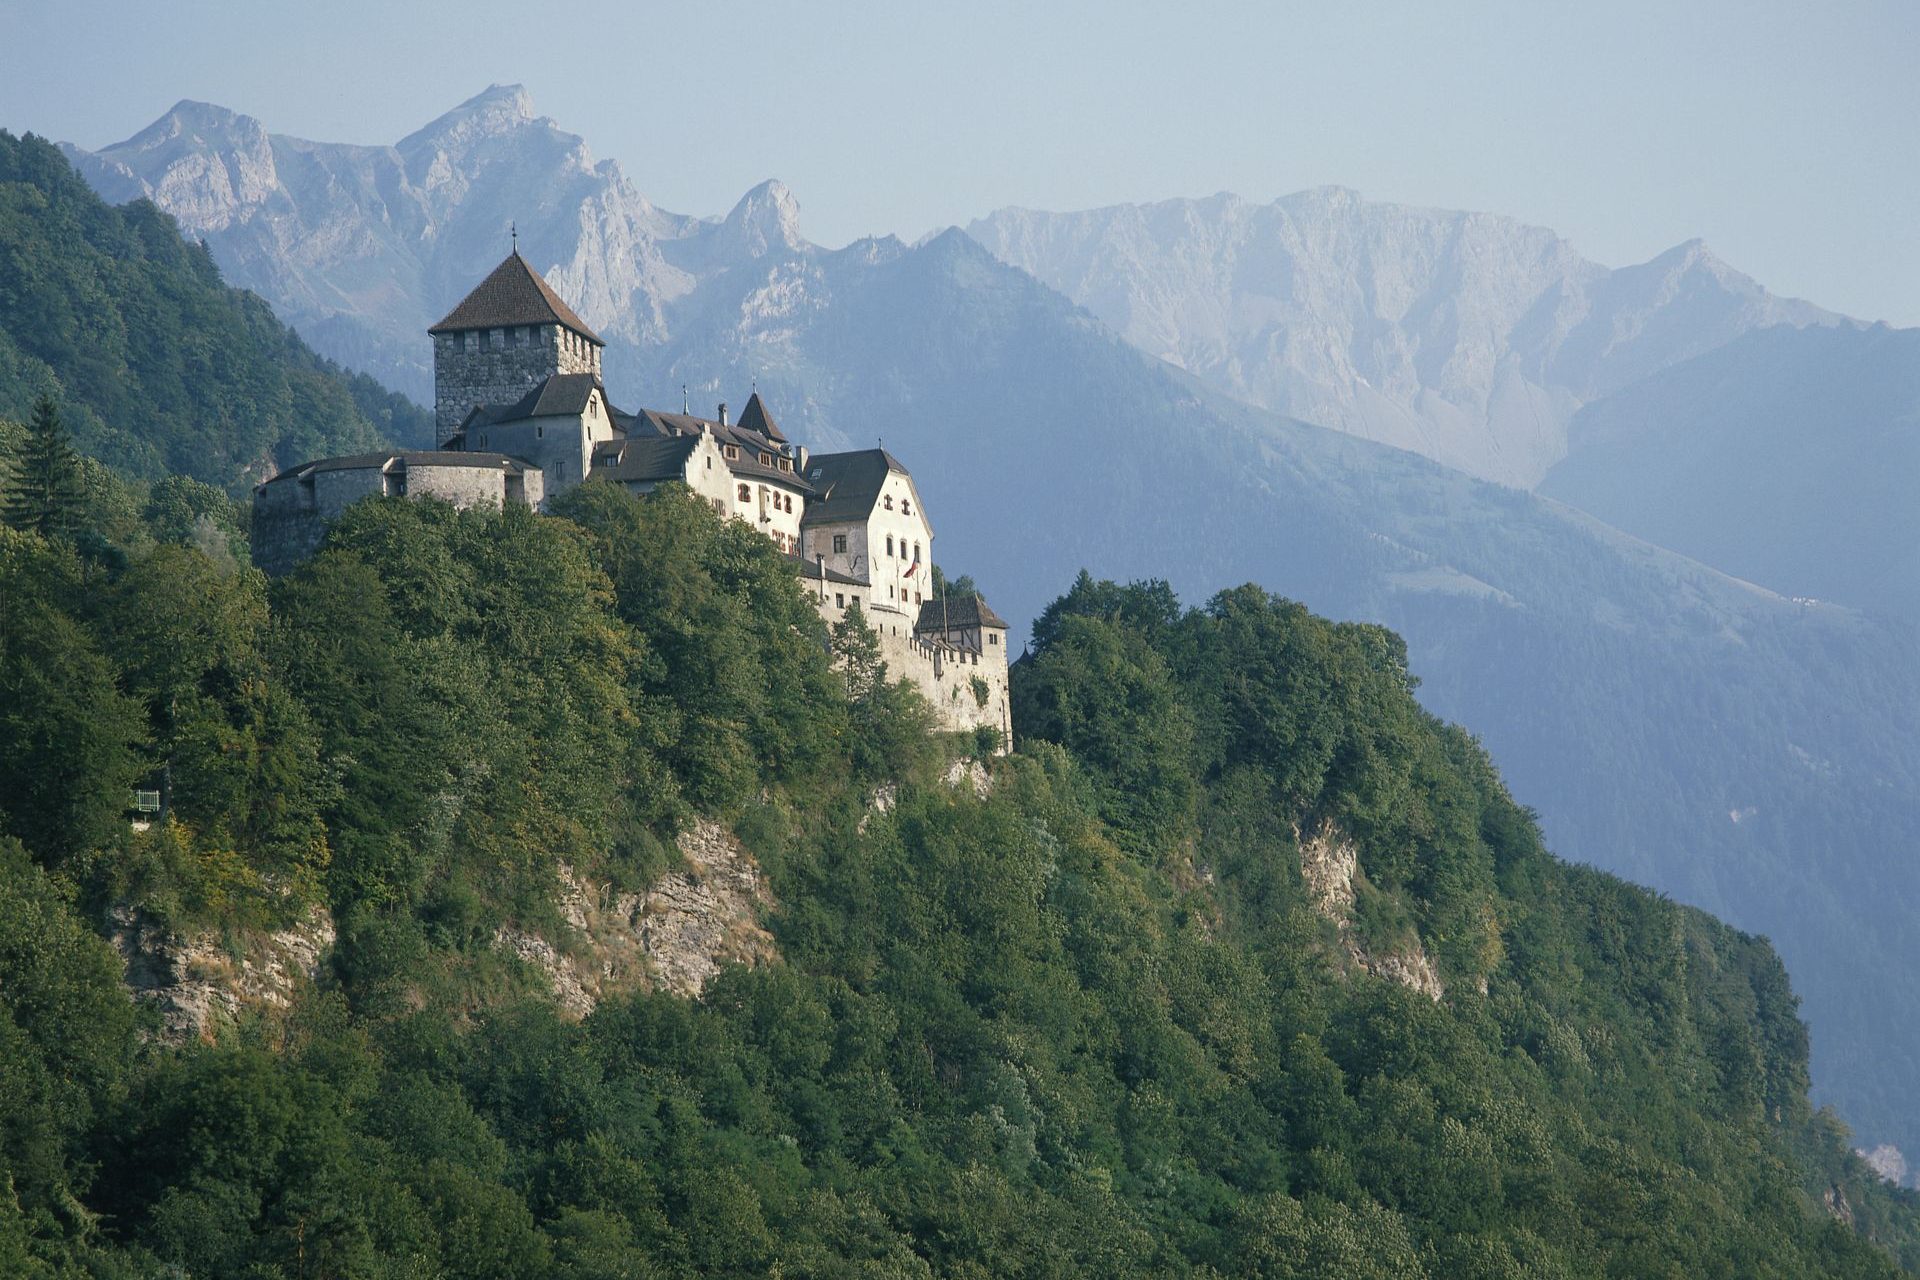 Liechtenstein: 84.77 years